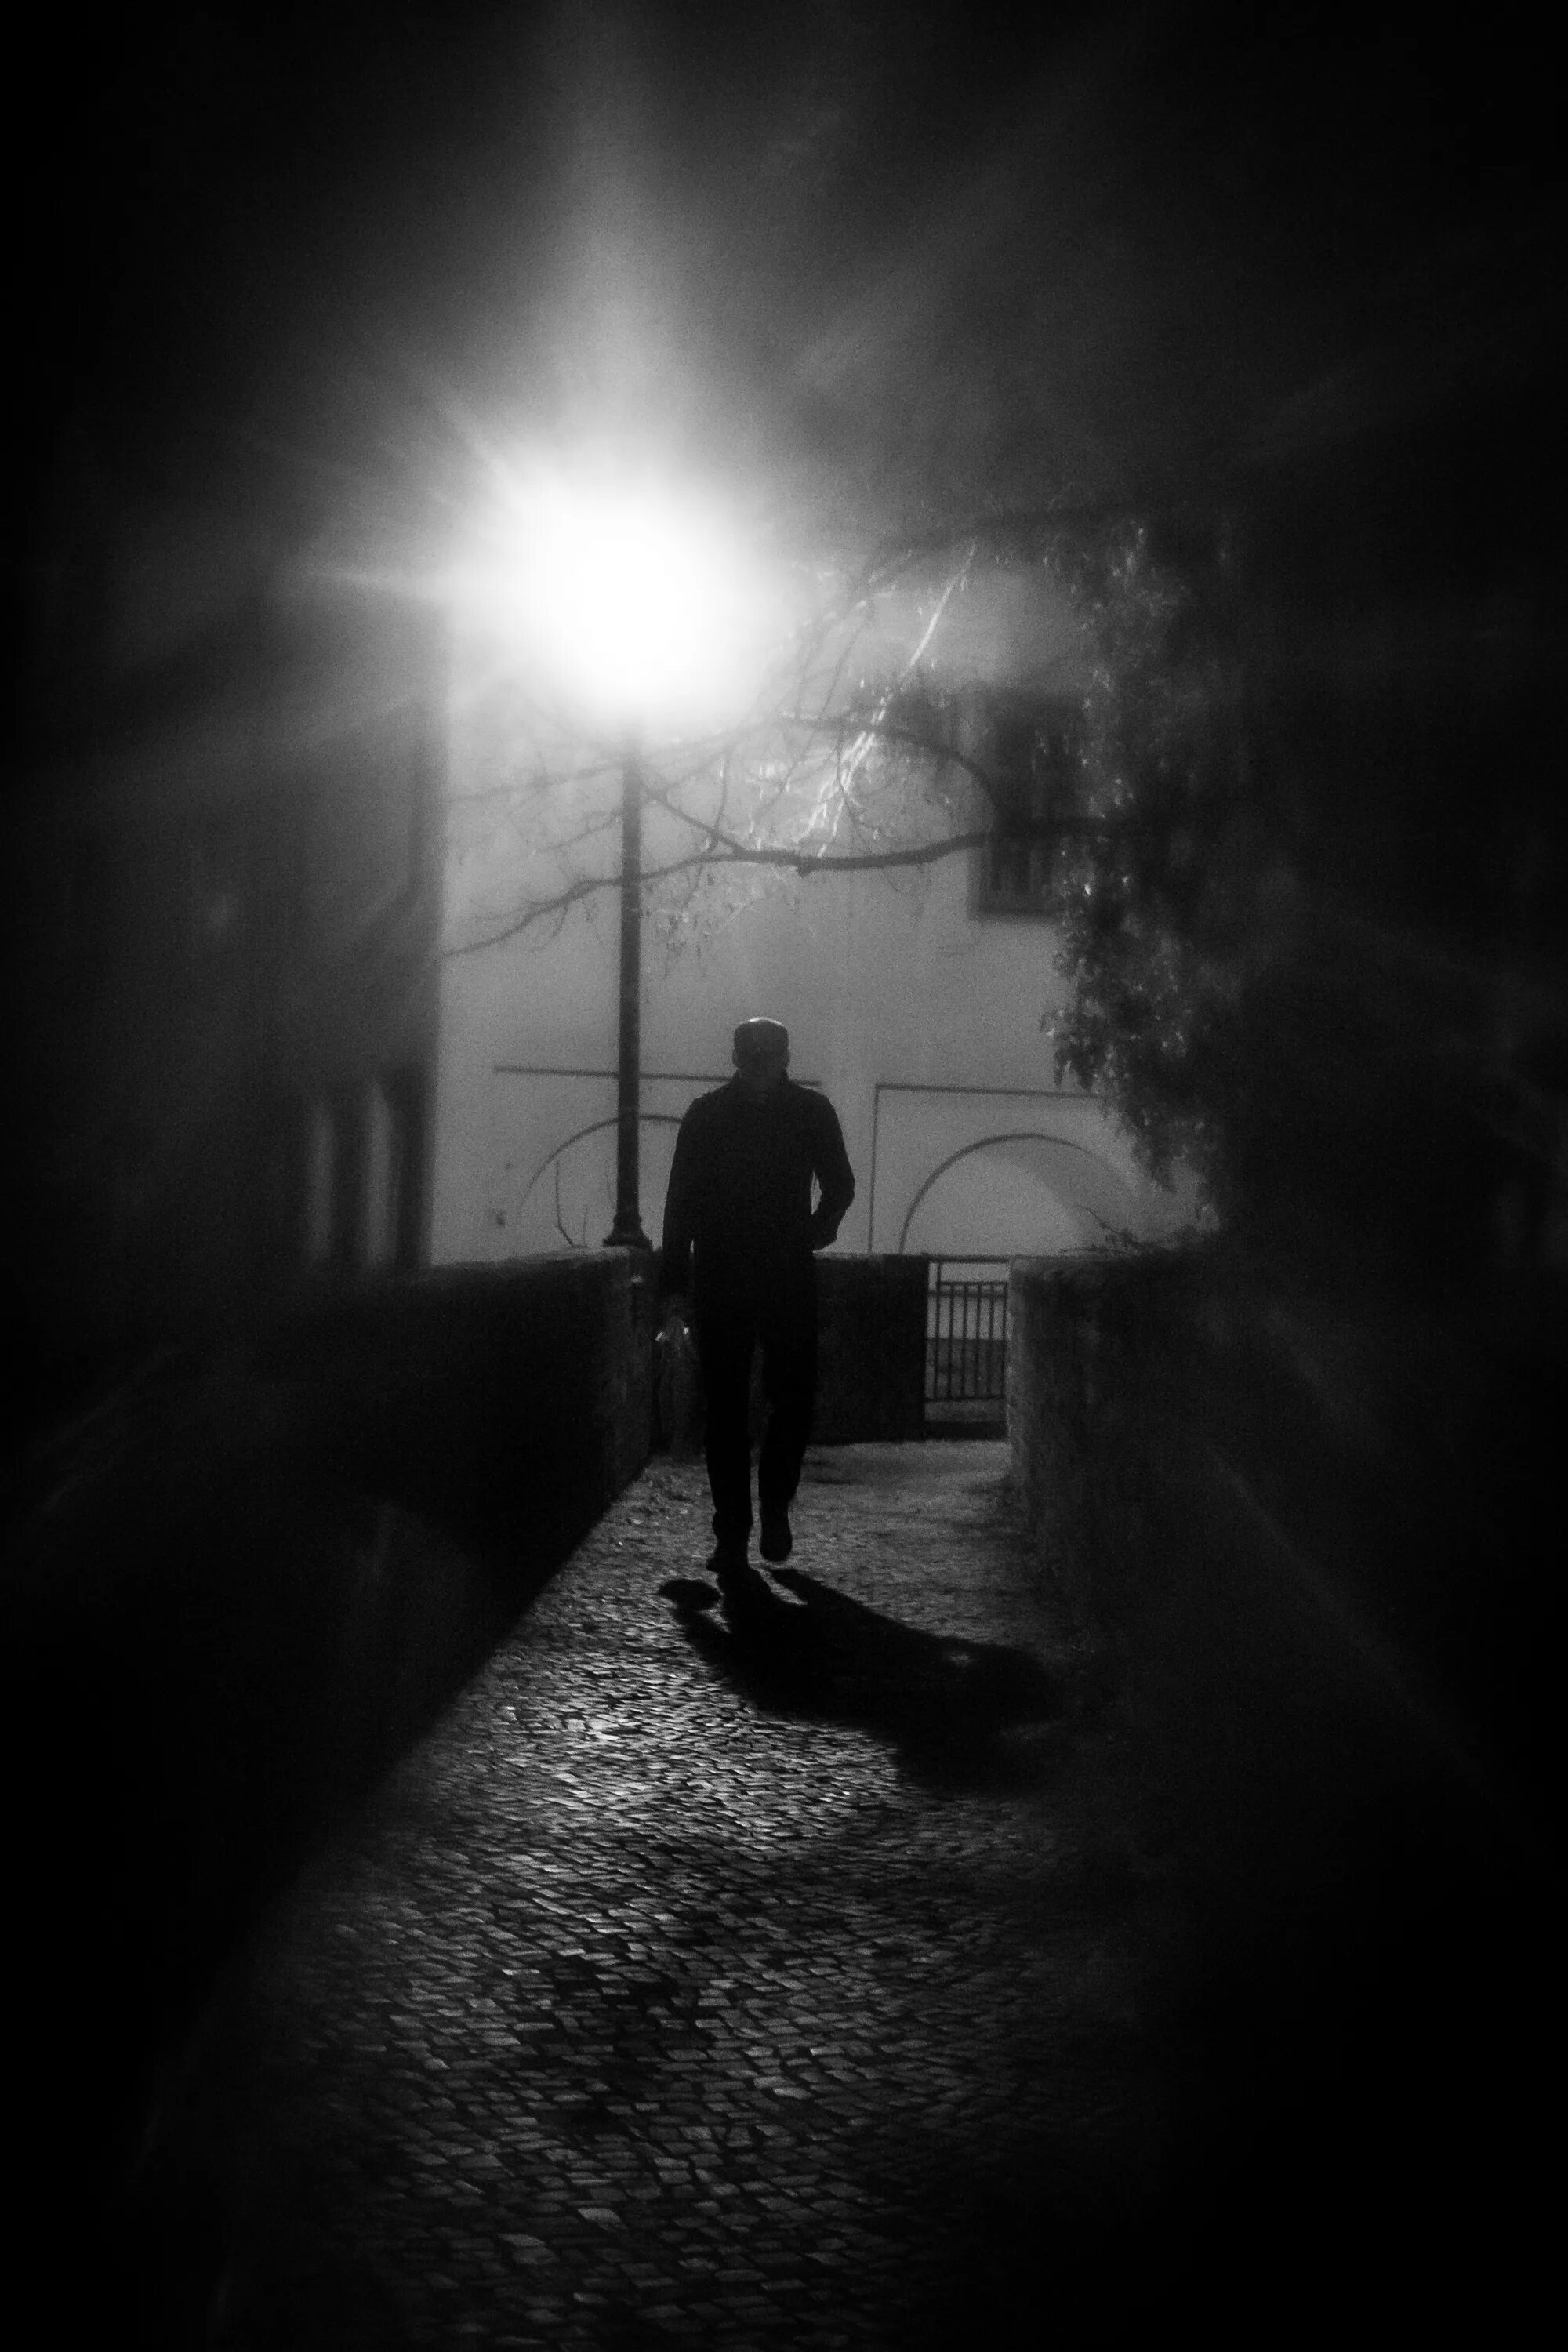 Парень в темноте. Человек на темной улице. Тени ушедших. Одиночество в ночи.